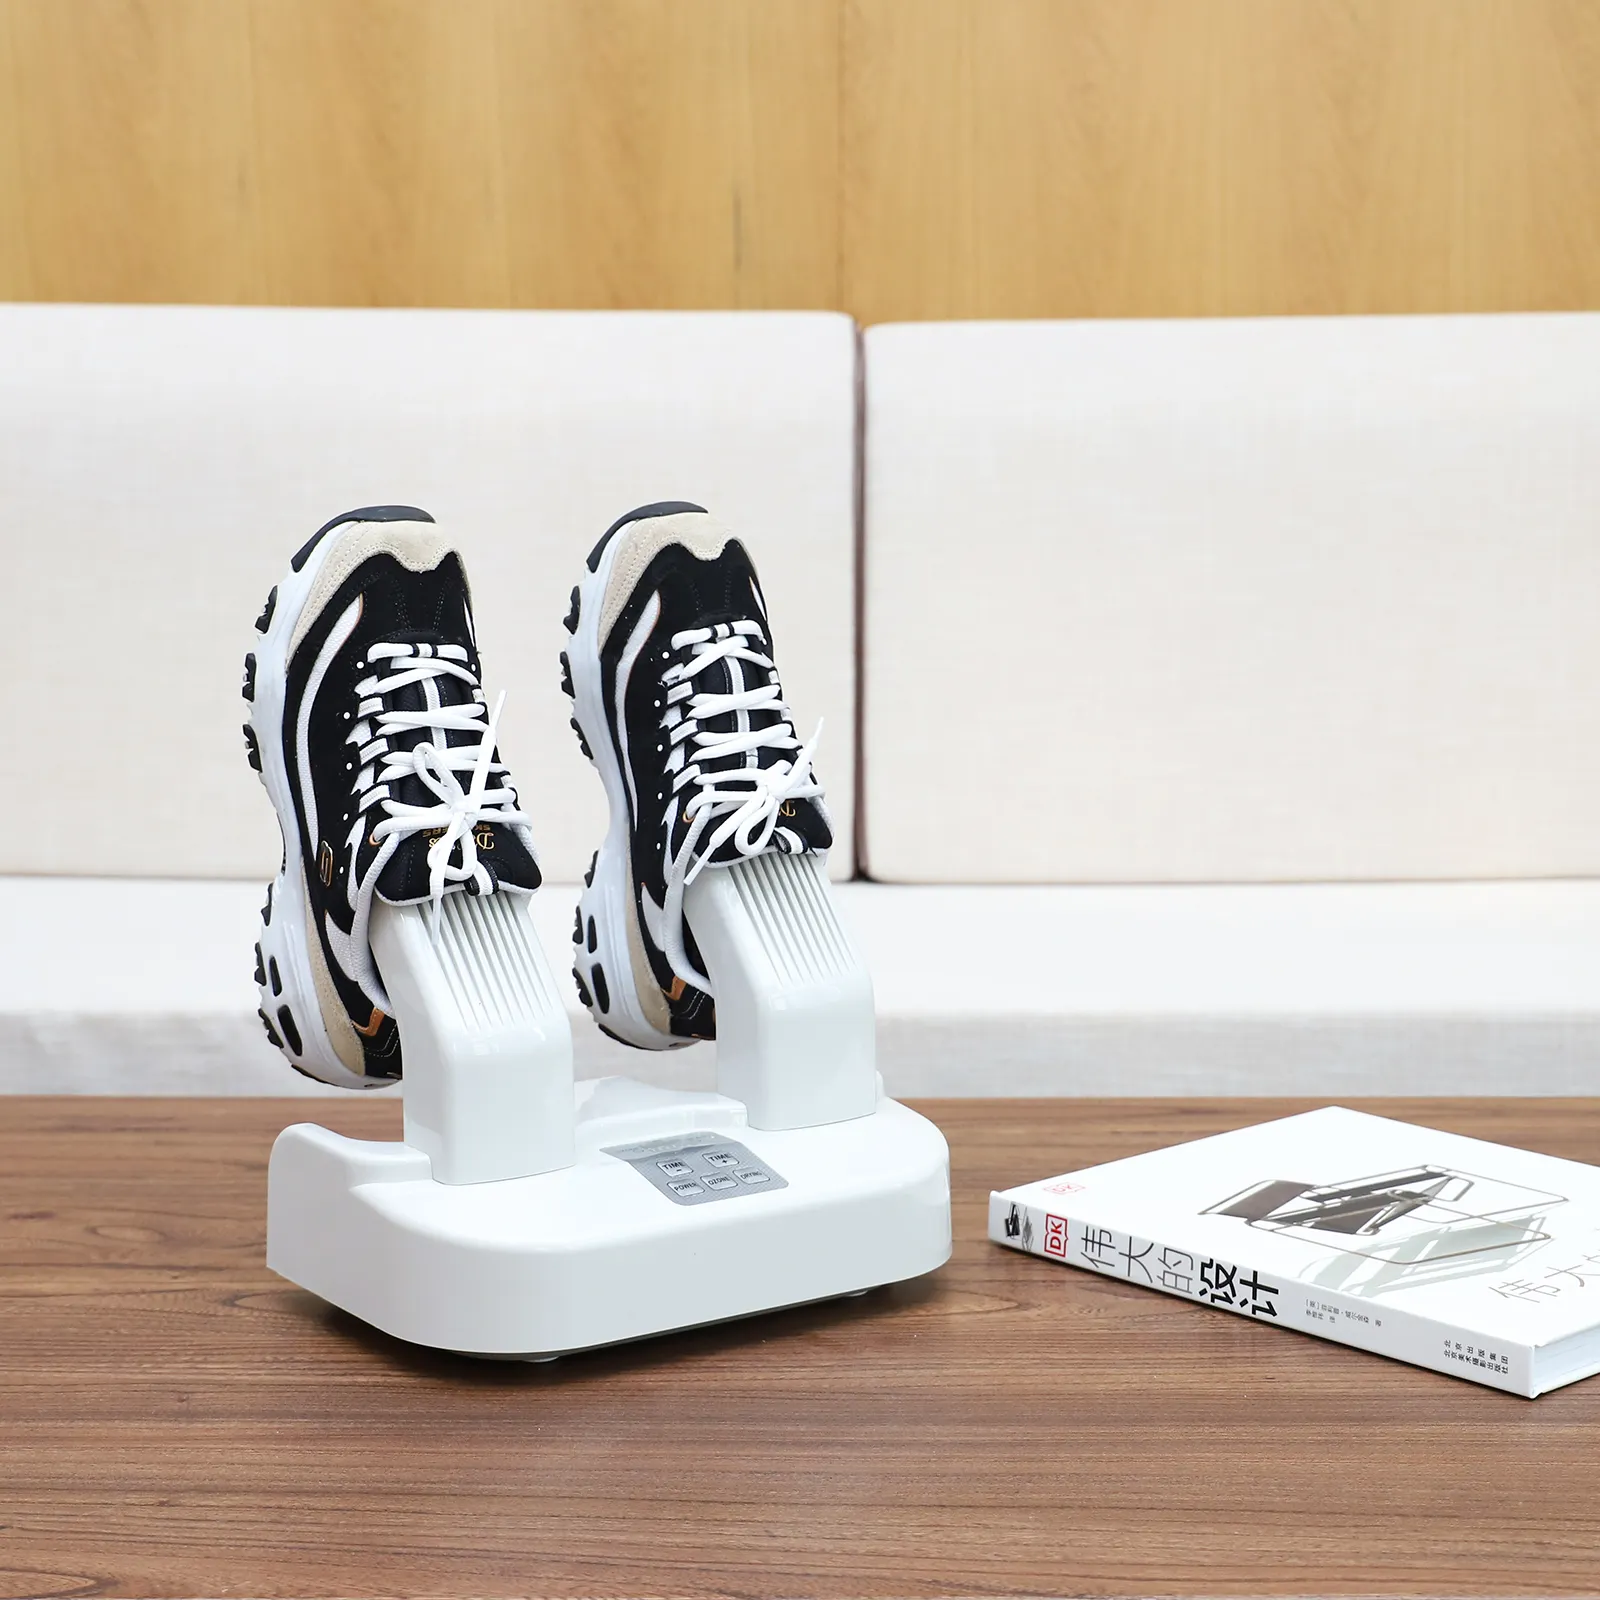 Déshumidifier le sèche-casque à l'ozone sèche-chaussures de ski sèche-chaussures avec minuterie chauffe-chaussures électrique portable